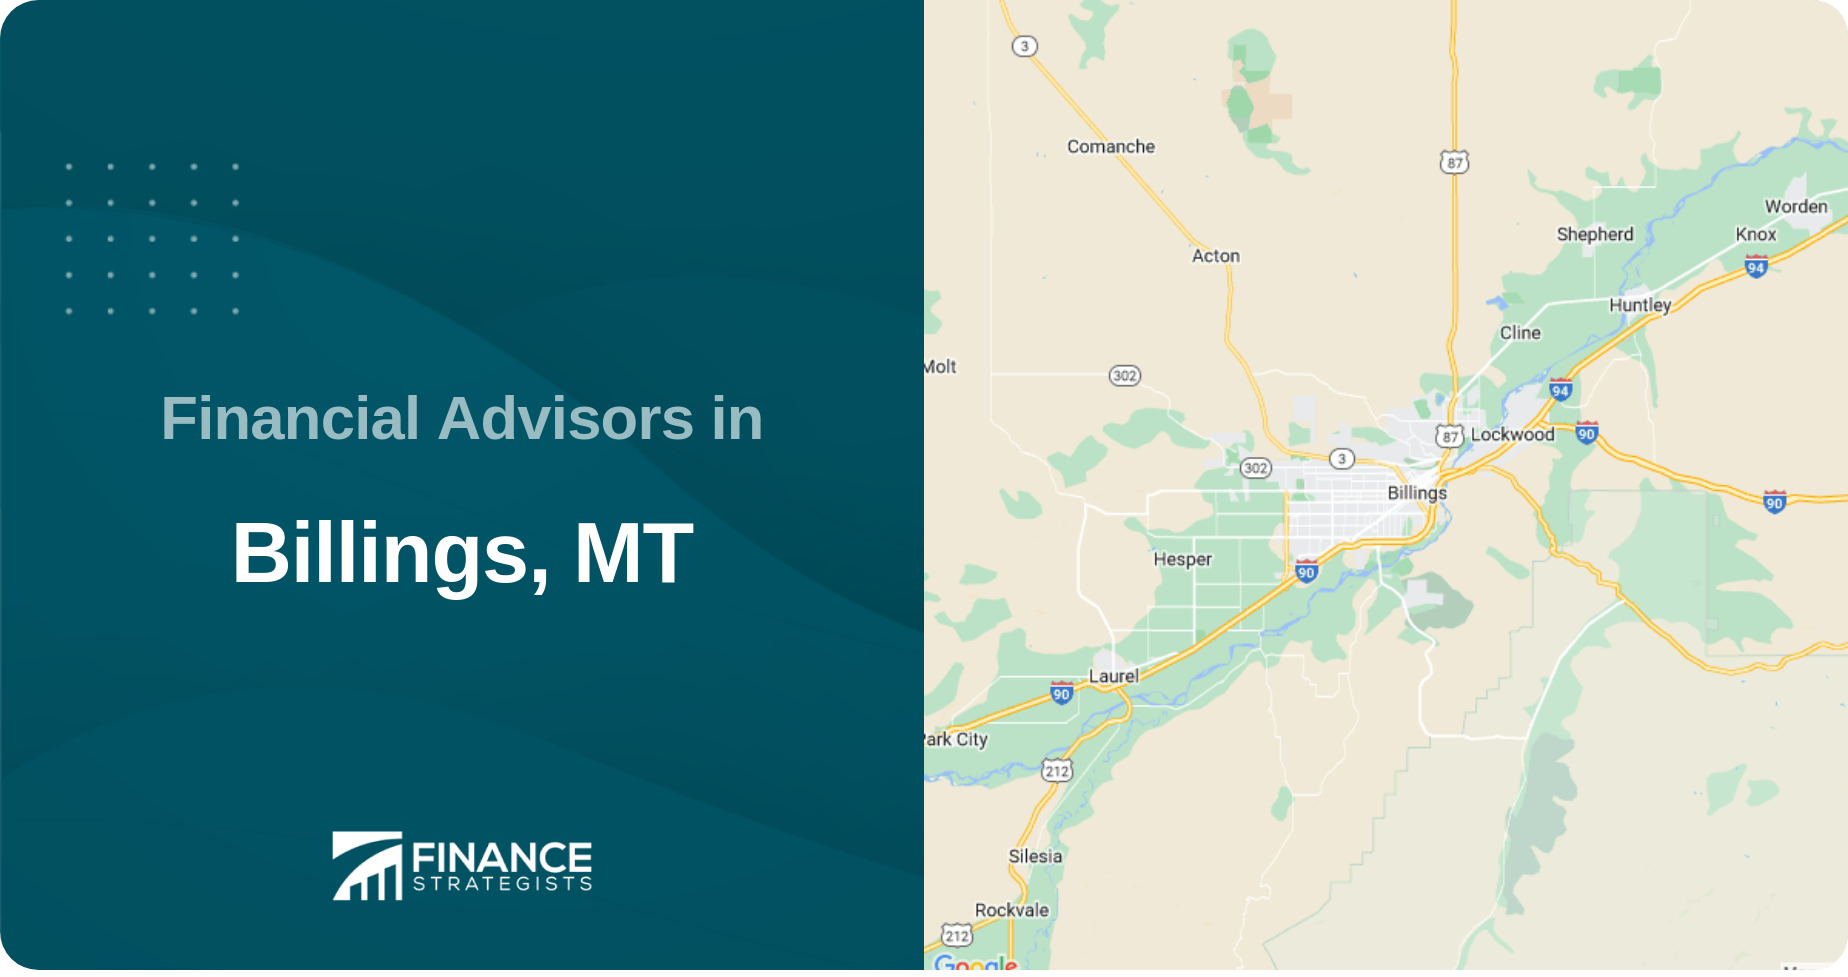 Financial Advisors in Billings, MT